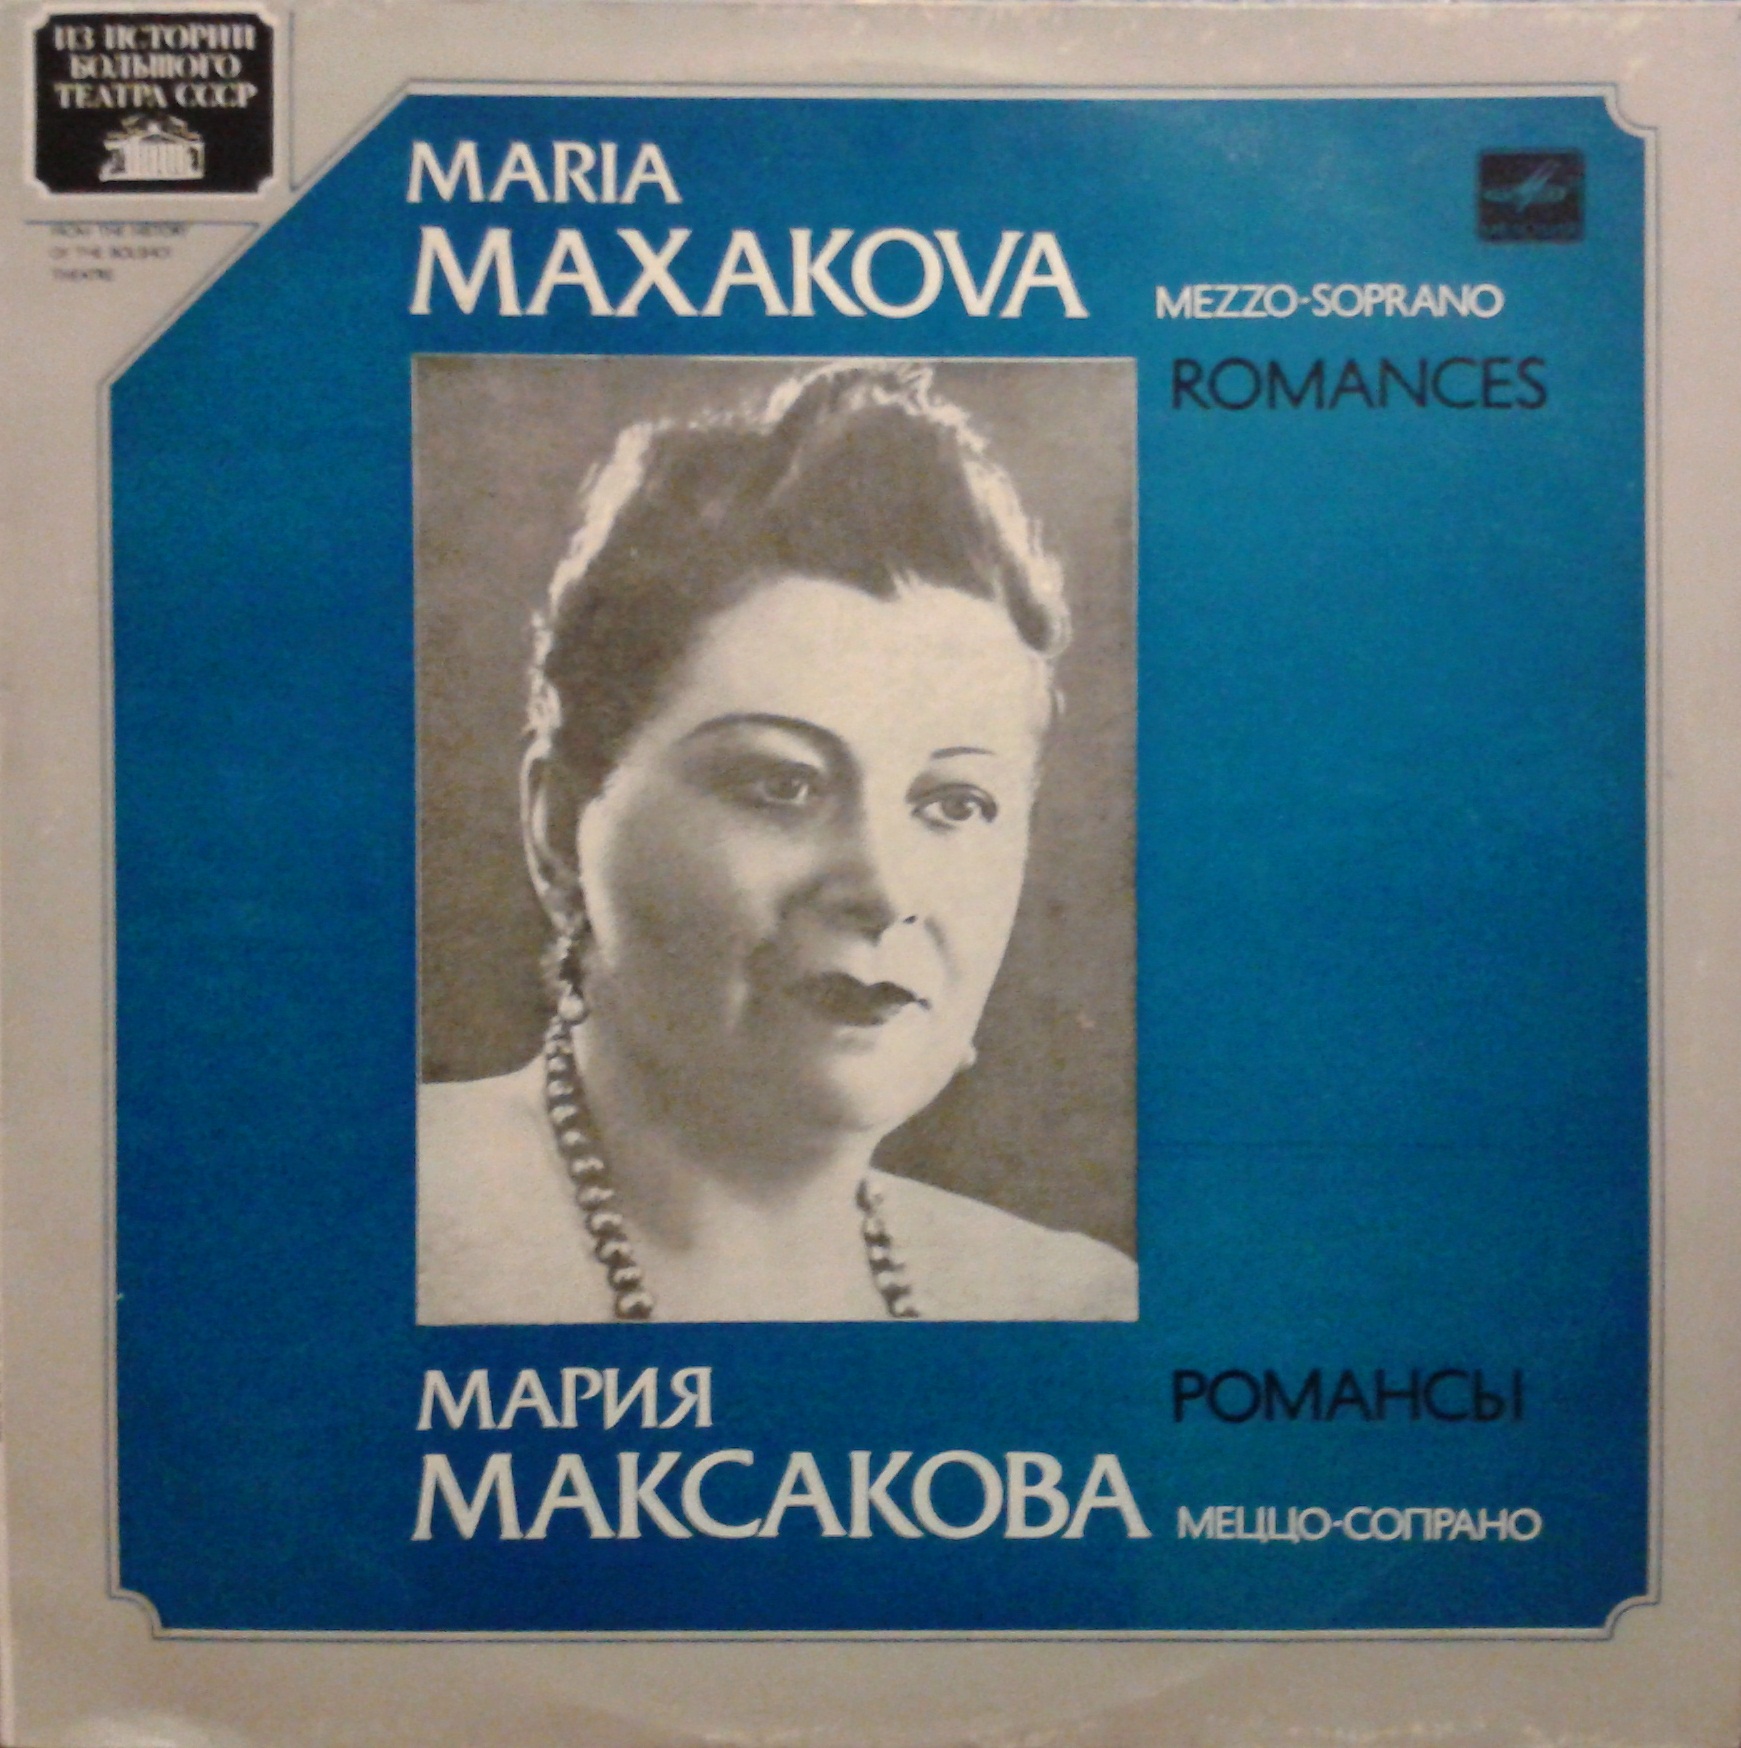 Мария МАКСАКОВА (меццо-сопрано). Романсы